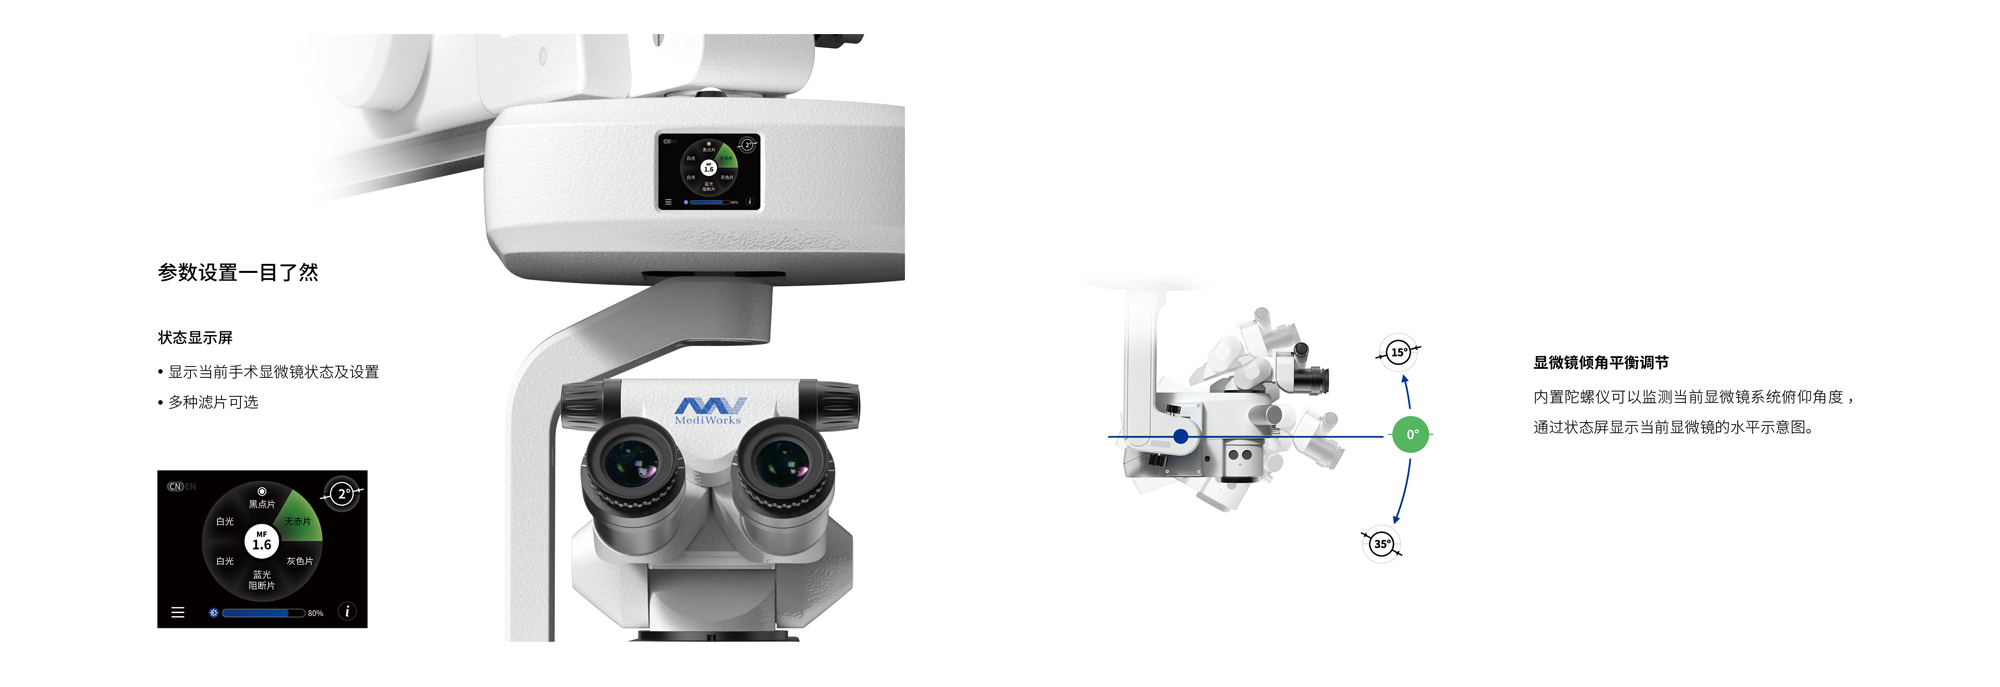 SM621-眼科手术显微镜-202304253.png